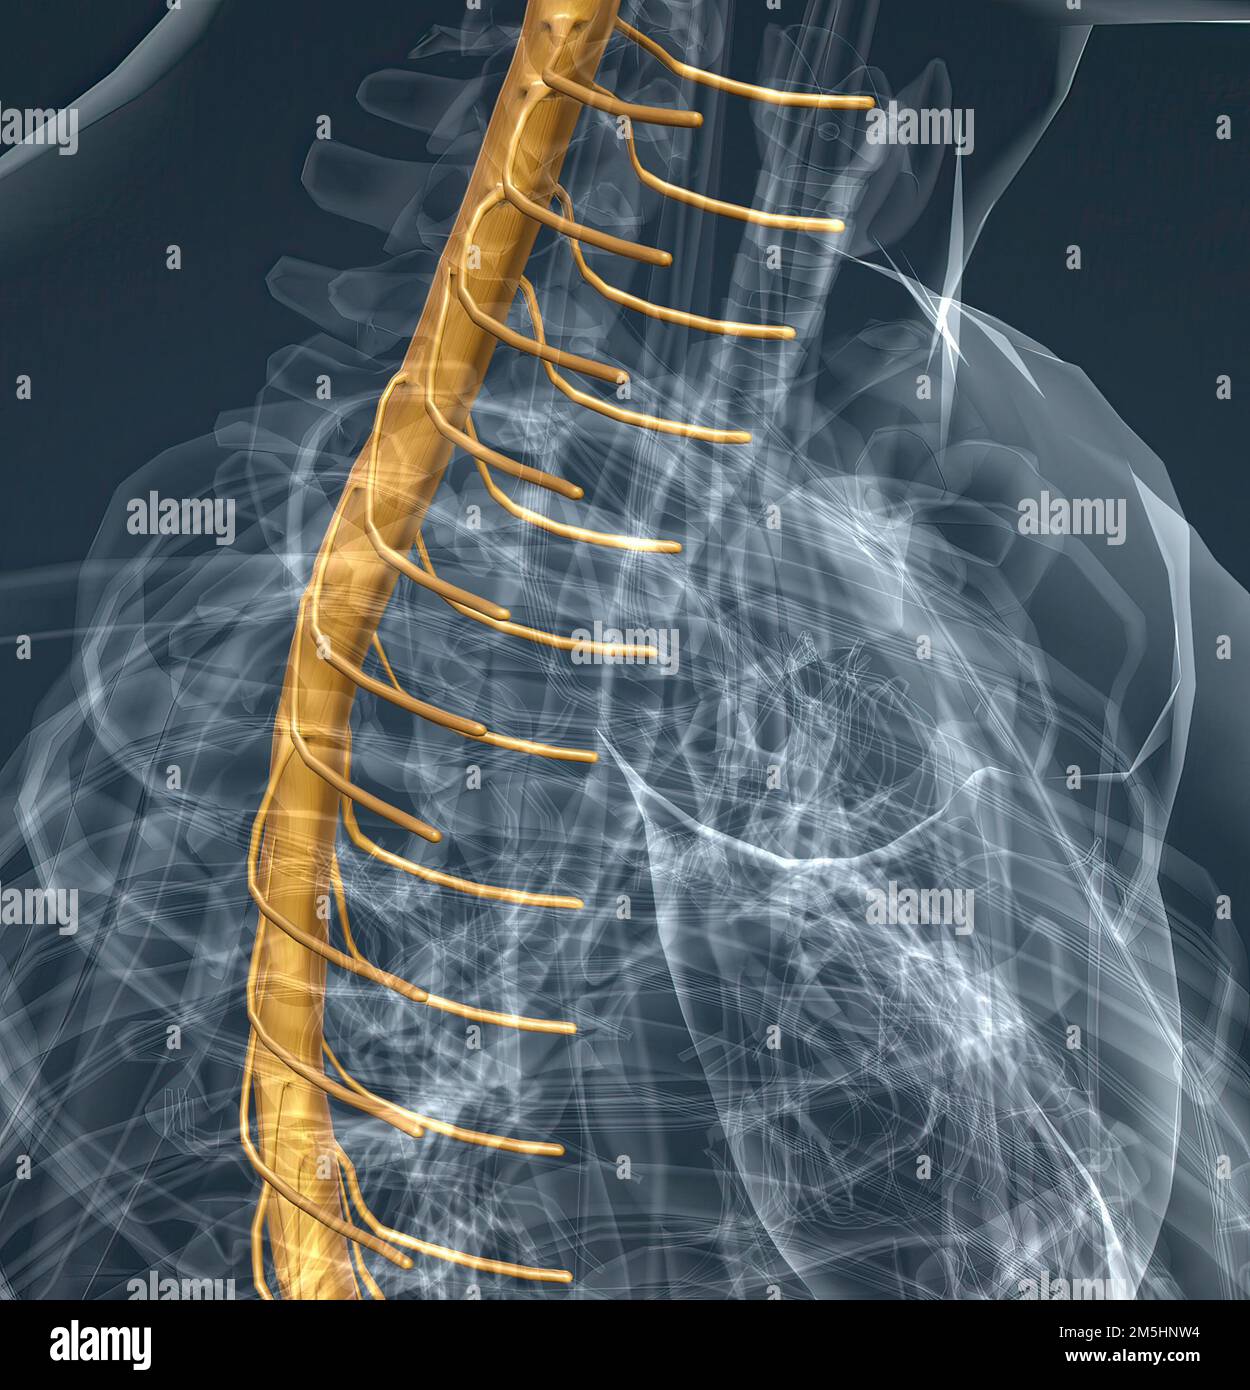 Les nerfs spinaux sont regroupés dans les régions cervicale, thoracique,  lombaire, sacrée et coccygienne correspondantes de la colonne vertébrale.  3d illustration Photo Stock - Alamy